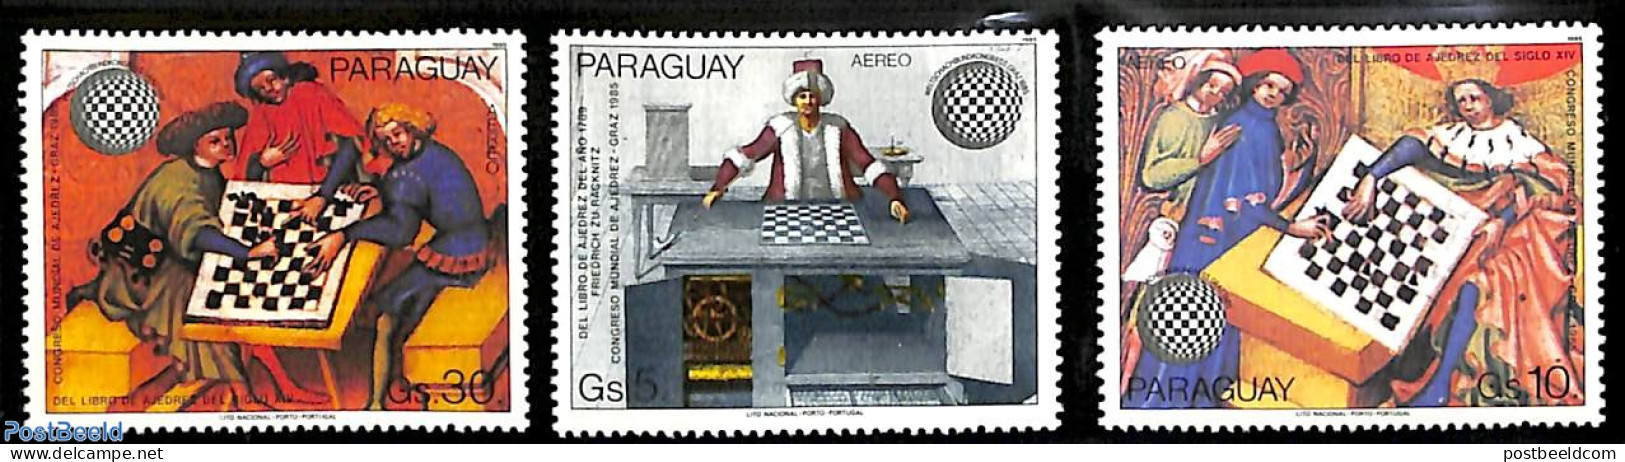 Paraguay 1985 Chess Congress 3v, Mint NH, Sport - Chess - Schach